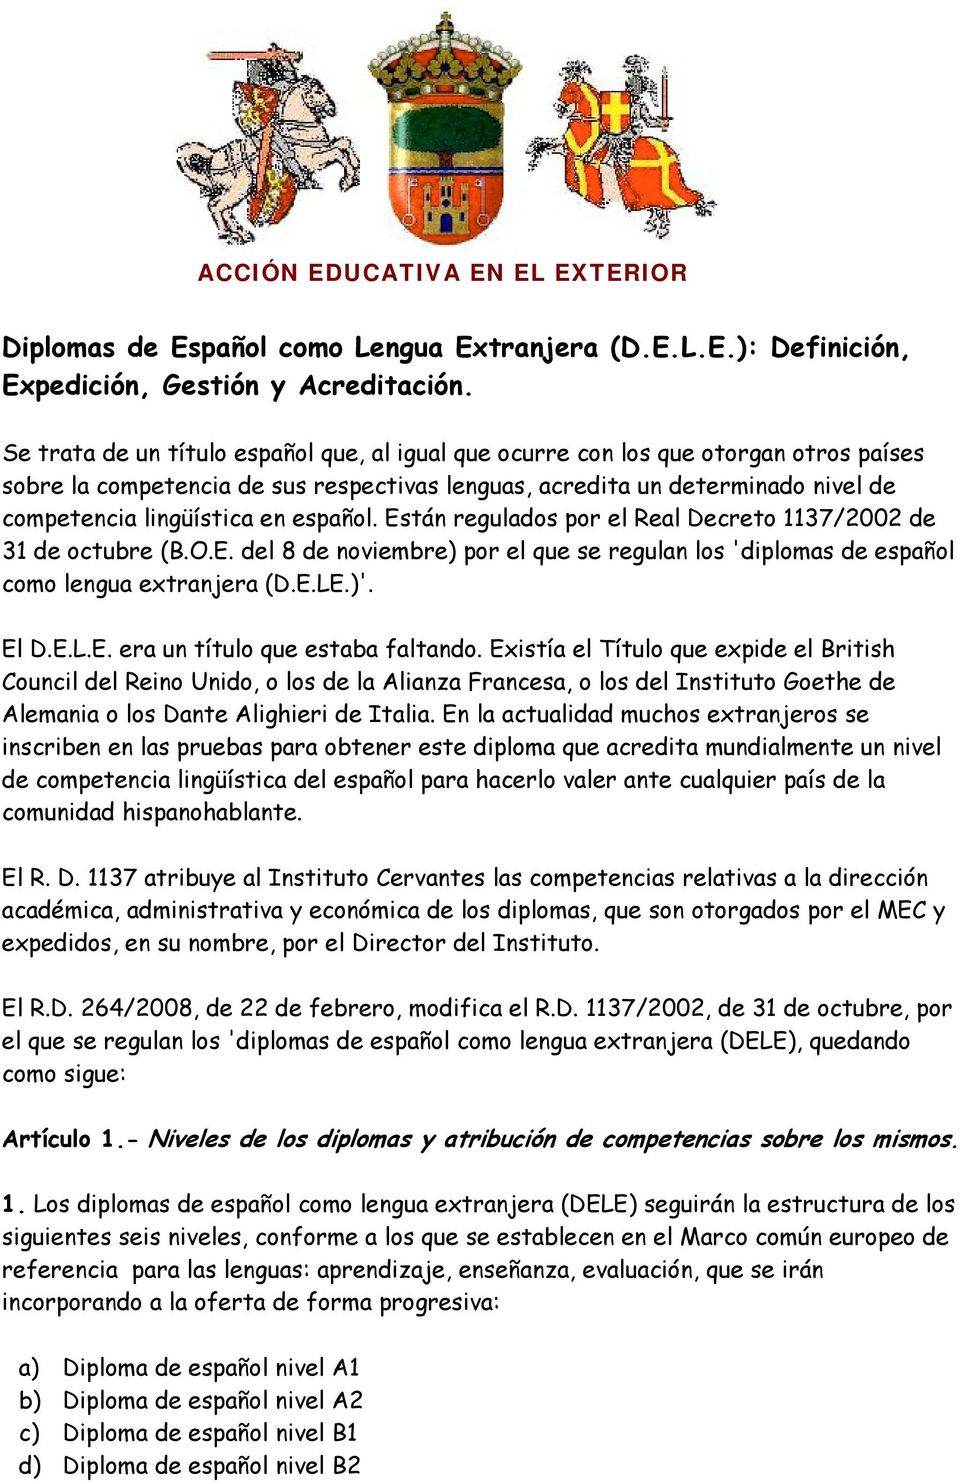 español. Están regulados por el Real Decreto 1137/2002 de 31 de octubre (B.O.E. del 8 de noviembre) por el que se regulan los 'diplomas de español como lengua extranjera (D.E.LE.)'. El D.E.L.E. era un título que estaba faltando.